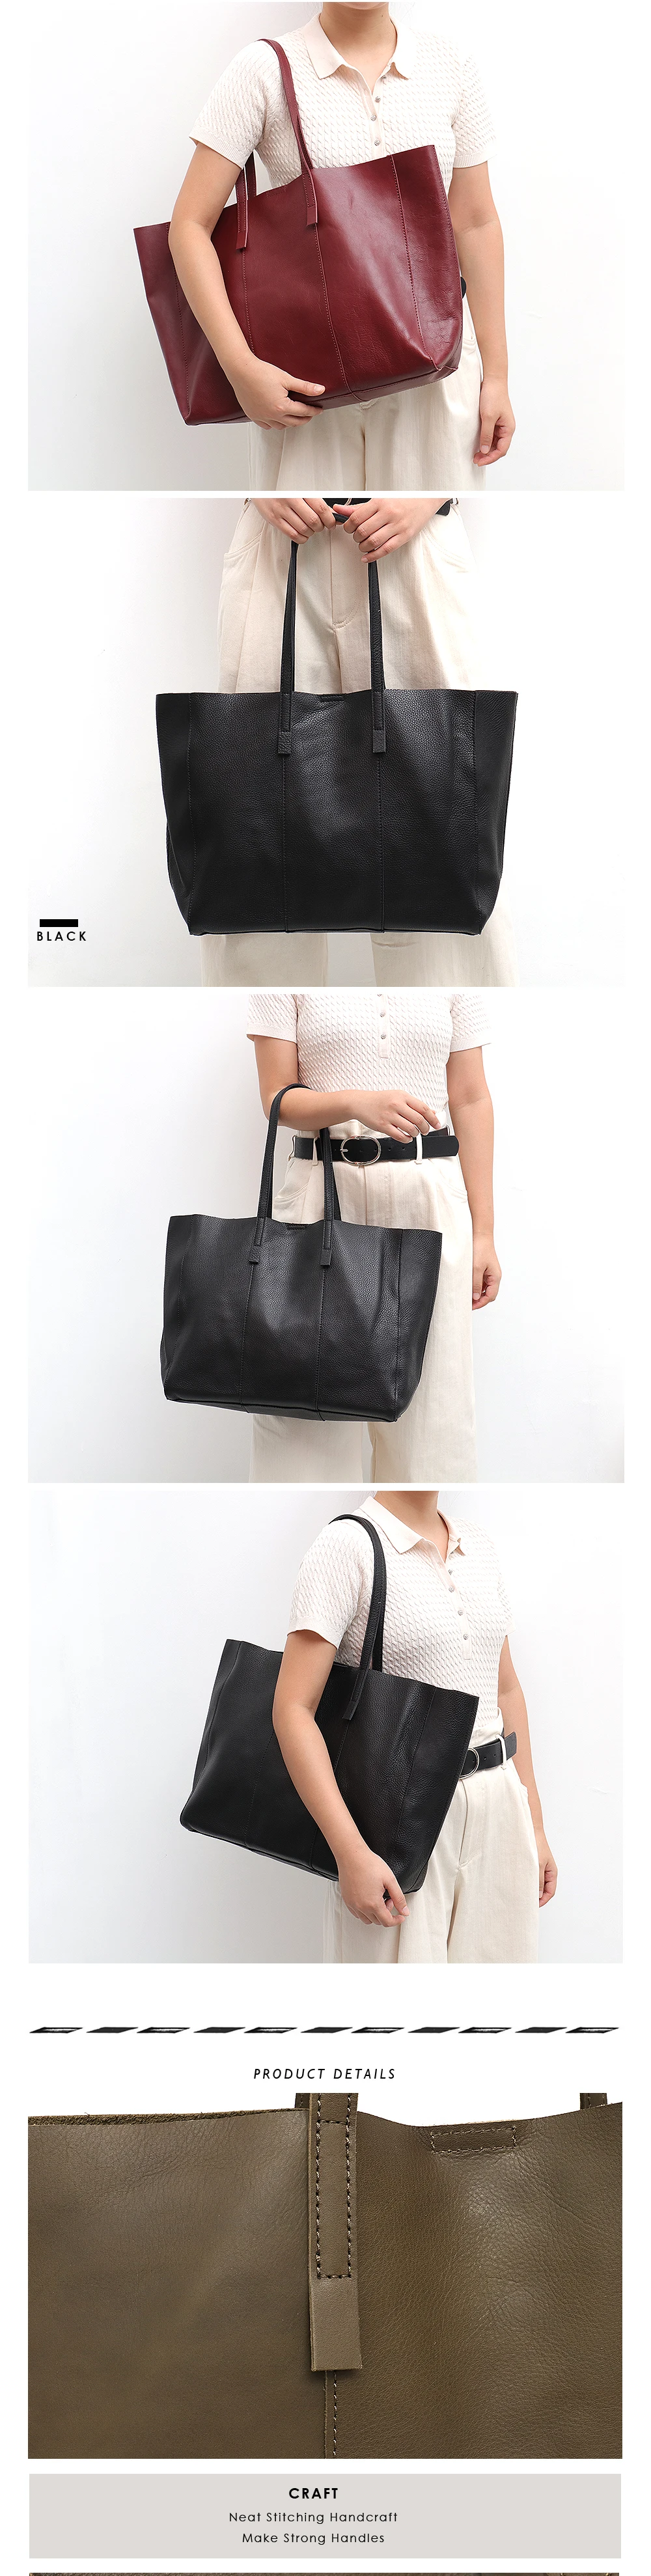 SC роскошная классическая сумка из натуральной кожи для женщин, высокое качество, коровья кожа, женская большая сумка на плечо, модная дизайнерская сумка